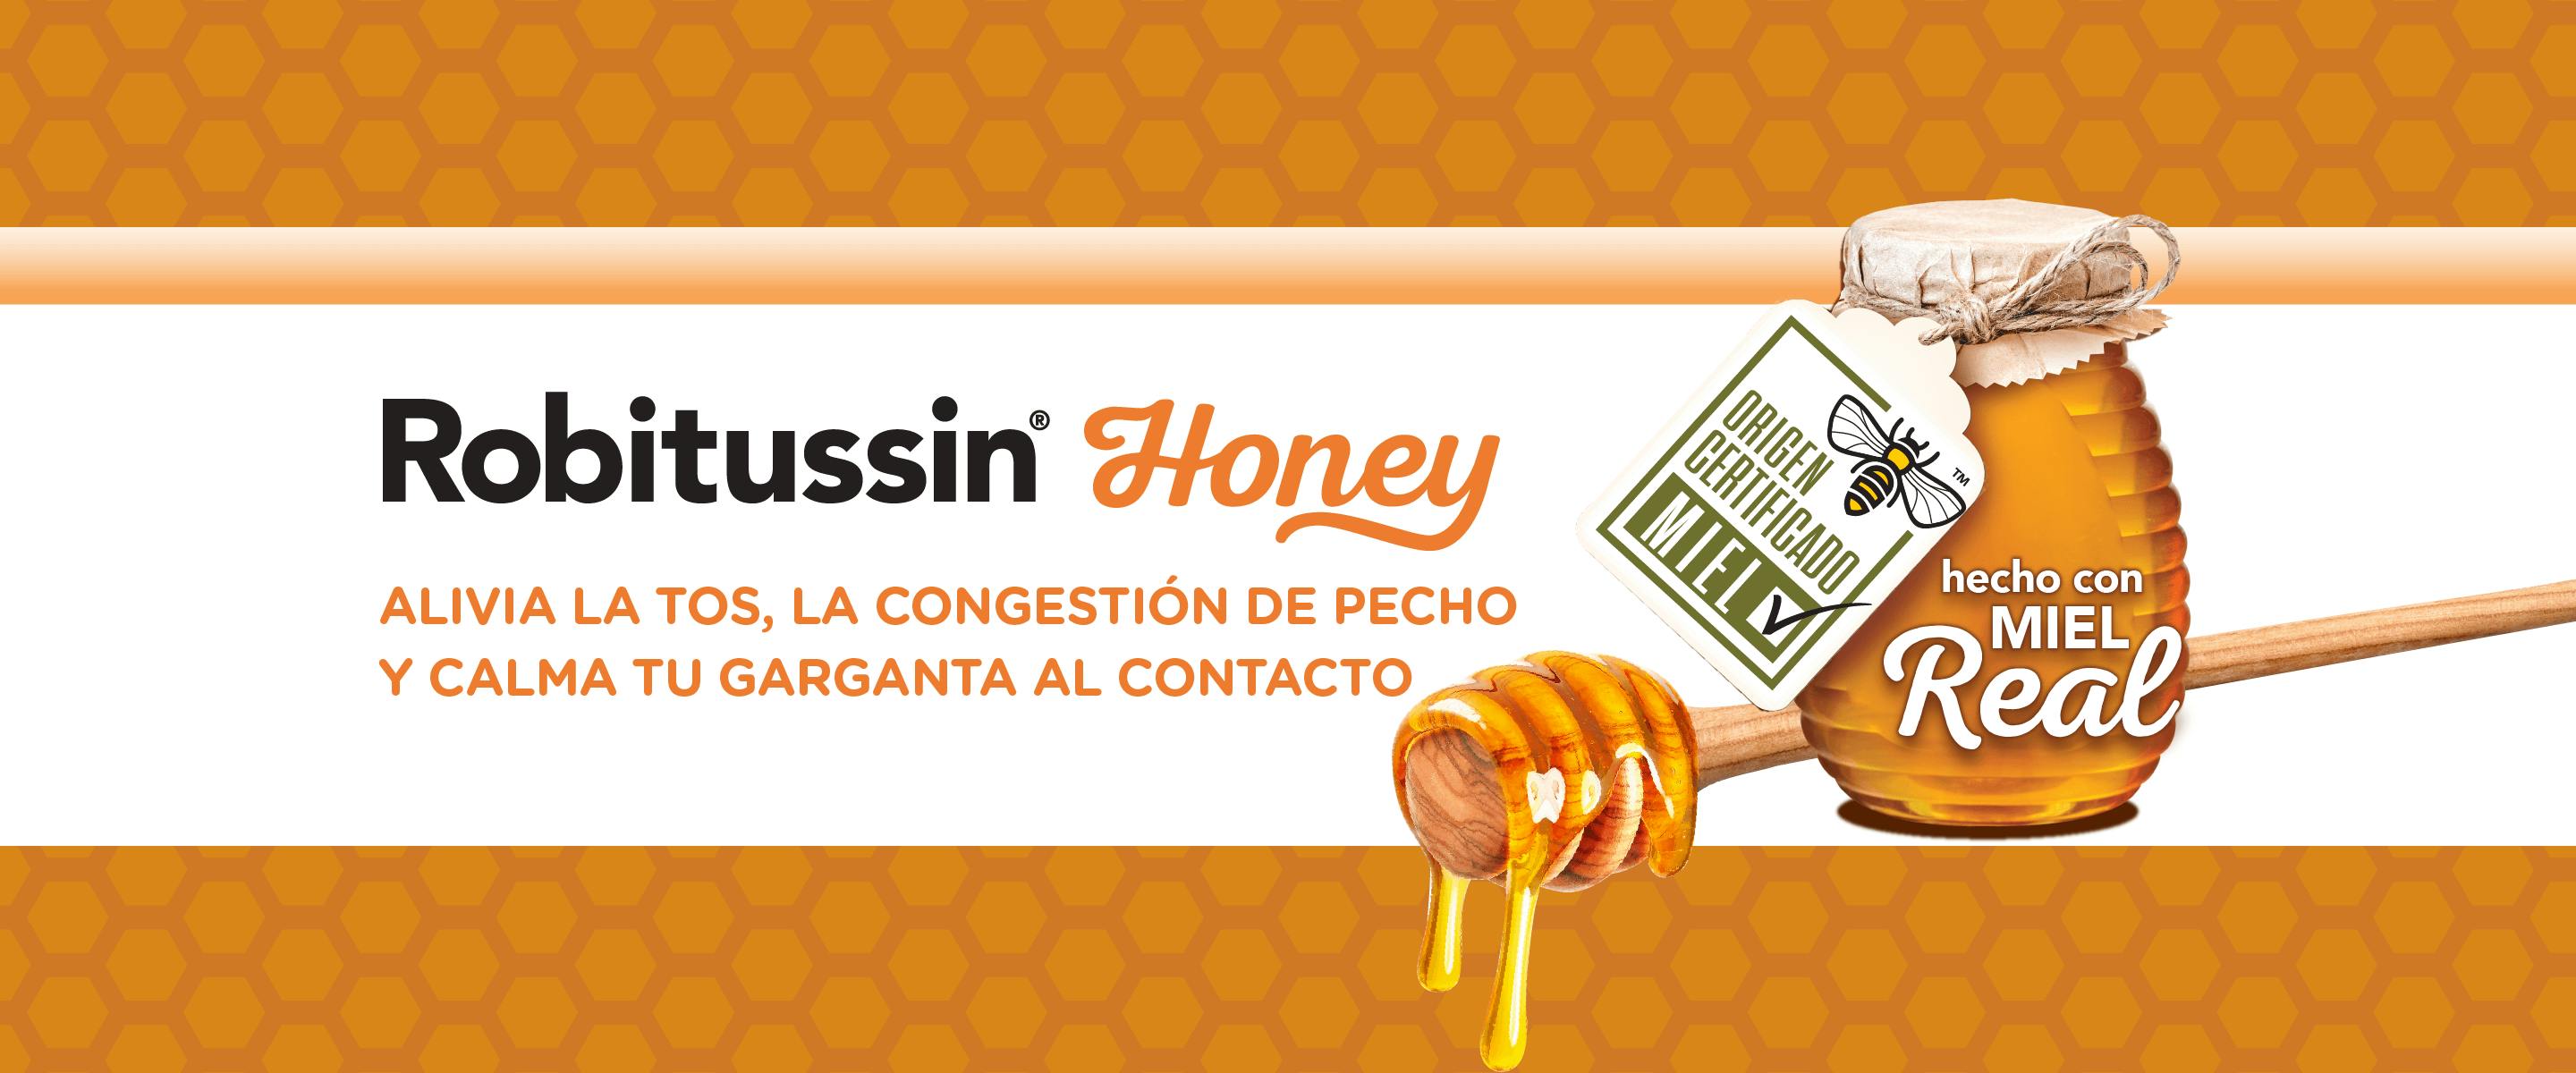 Honeylg